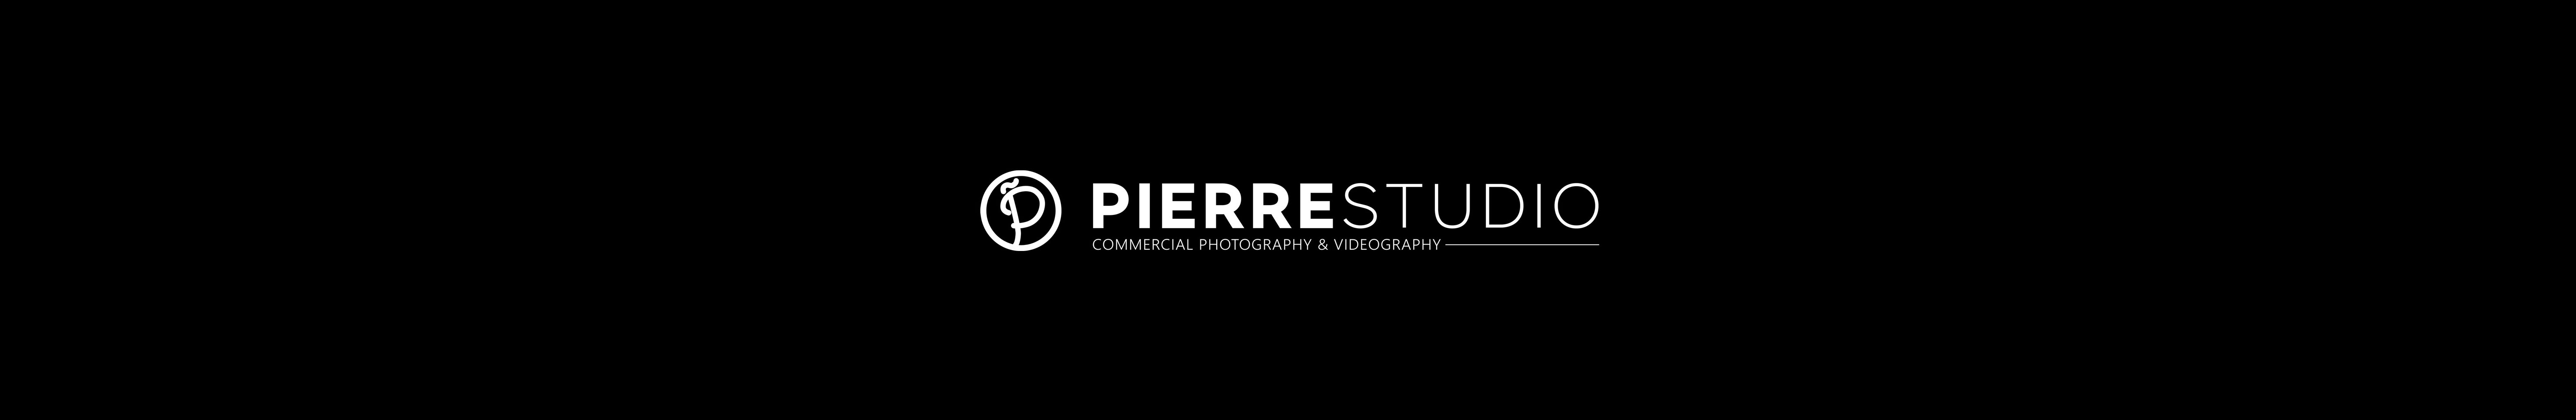 PIERRE STUDIO's profile banner